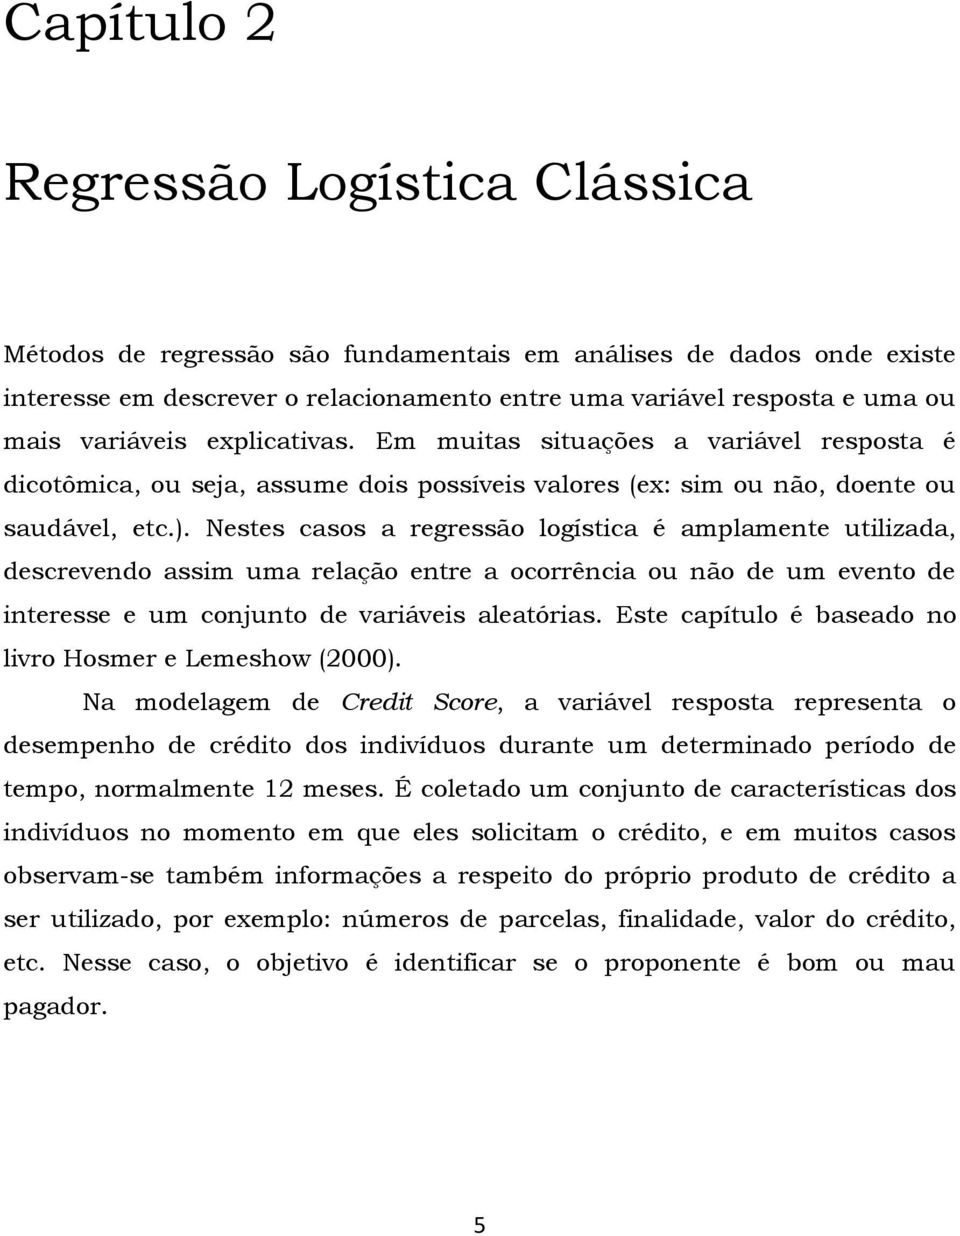 Nestes casos a regressão logística é amplamente utilizada, descrevendo assim uma relação entre a ocorrência ou não de um evento de interesse e um conjunto de variáveis aleatórias.